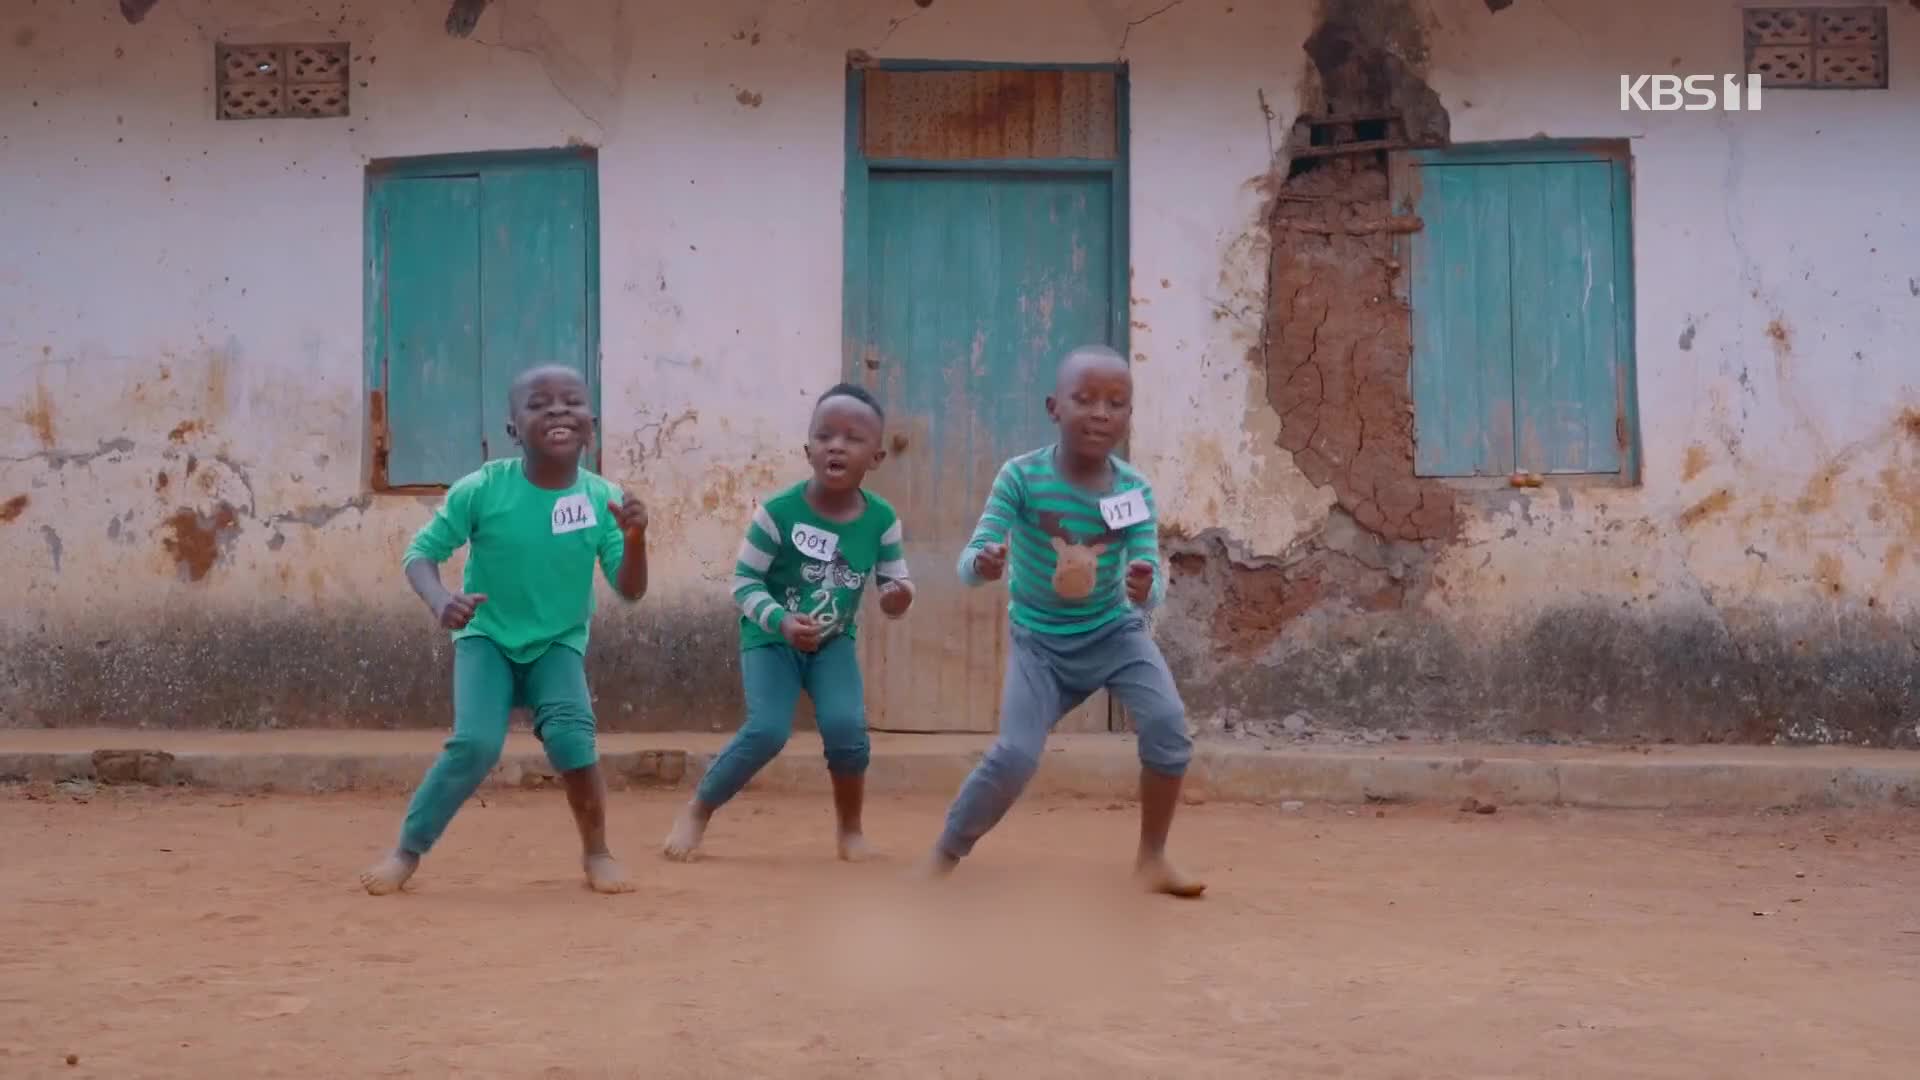 우간다 어린이들, 맨발로 ‘오징어 게임’ 춤 선보인 이유는?